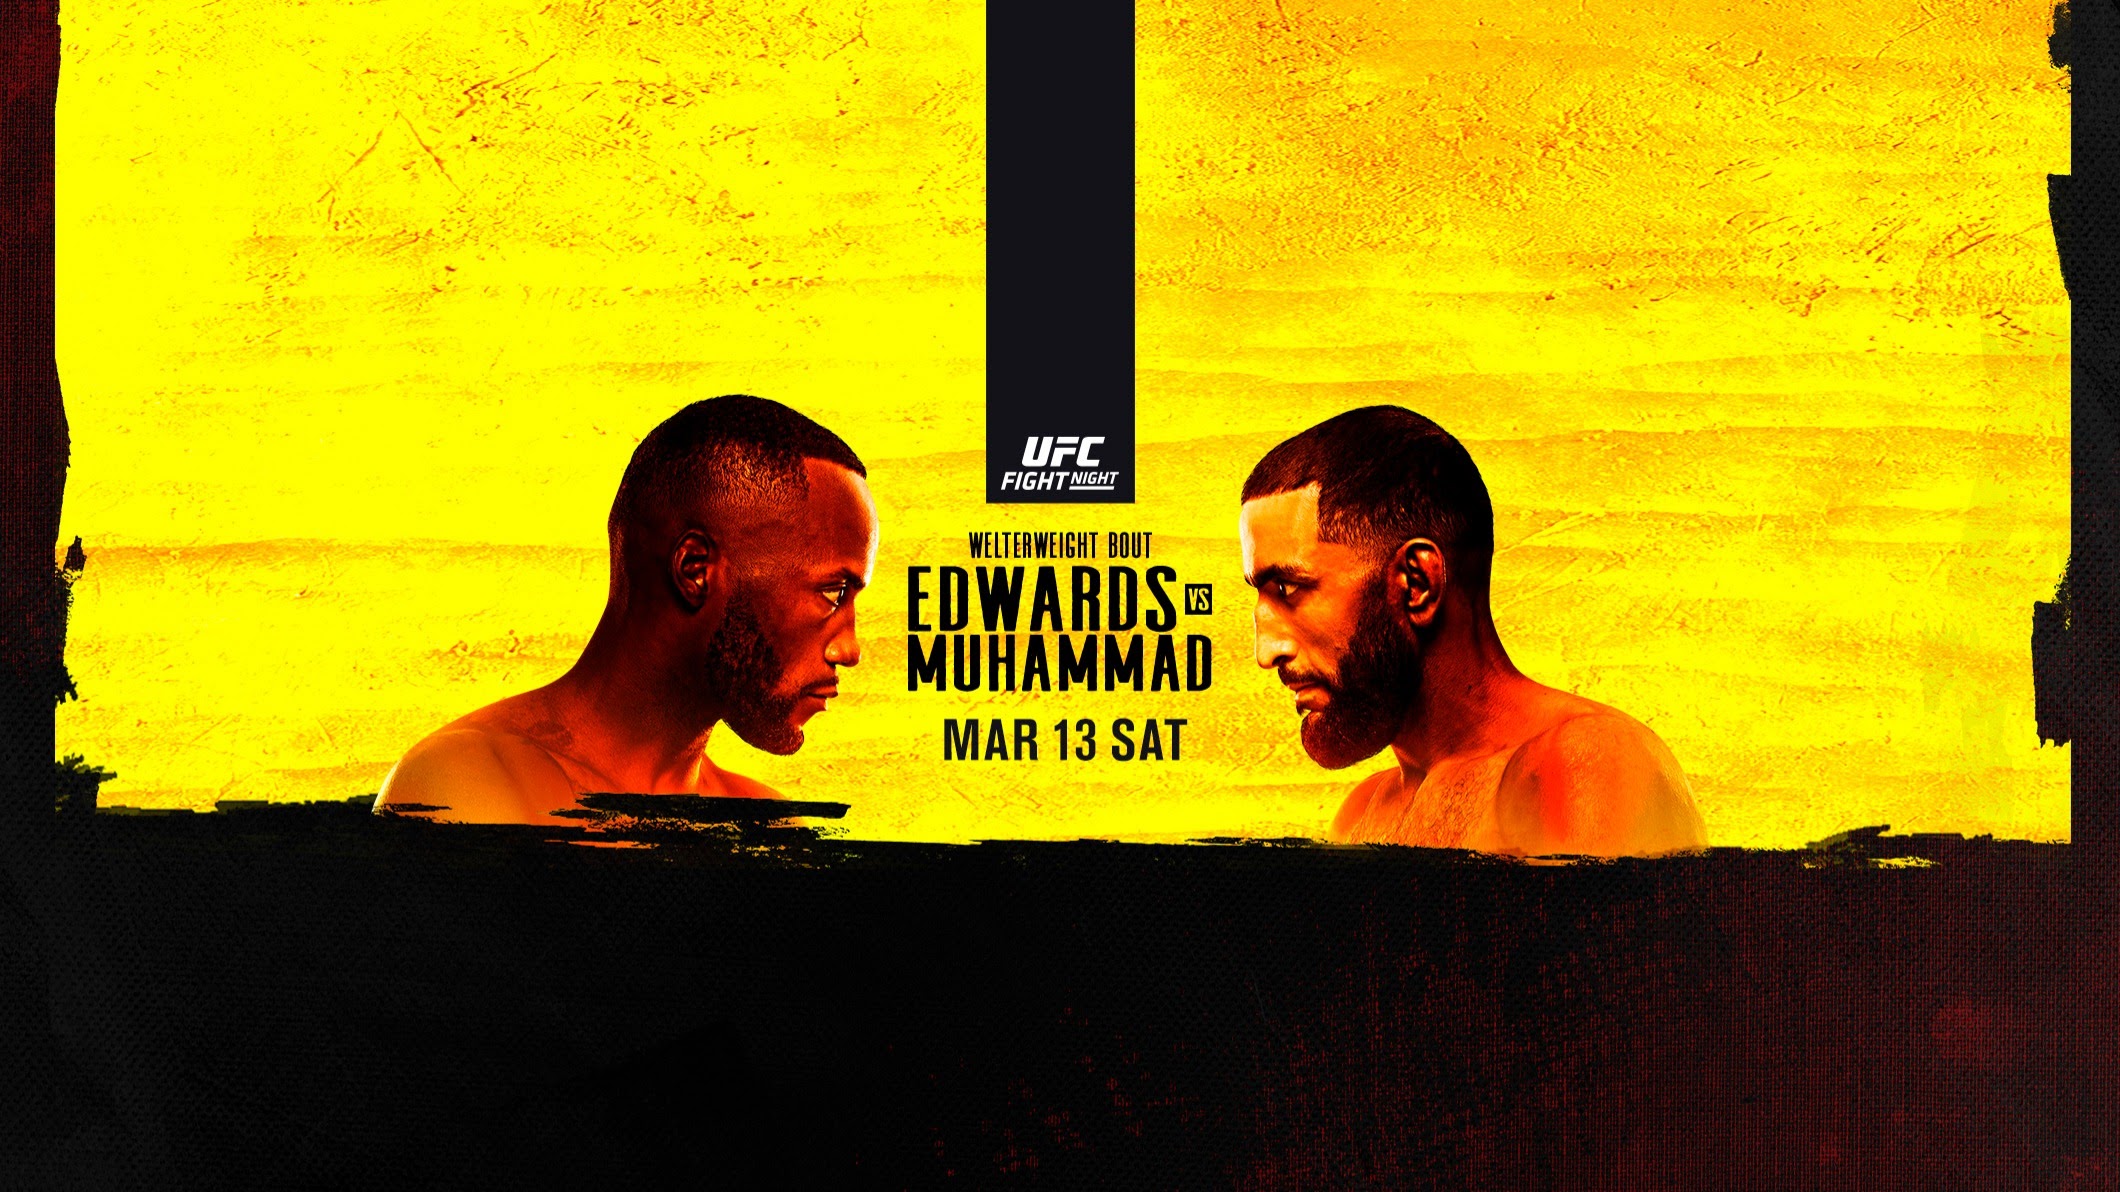 UFC on ESPN+ 45 - Las Vegas - Poster et affiche